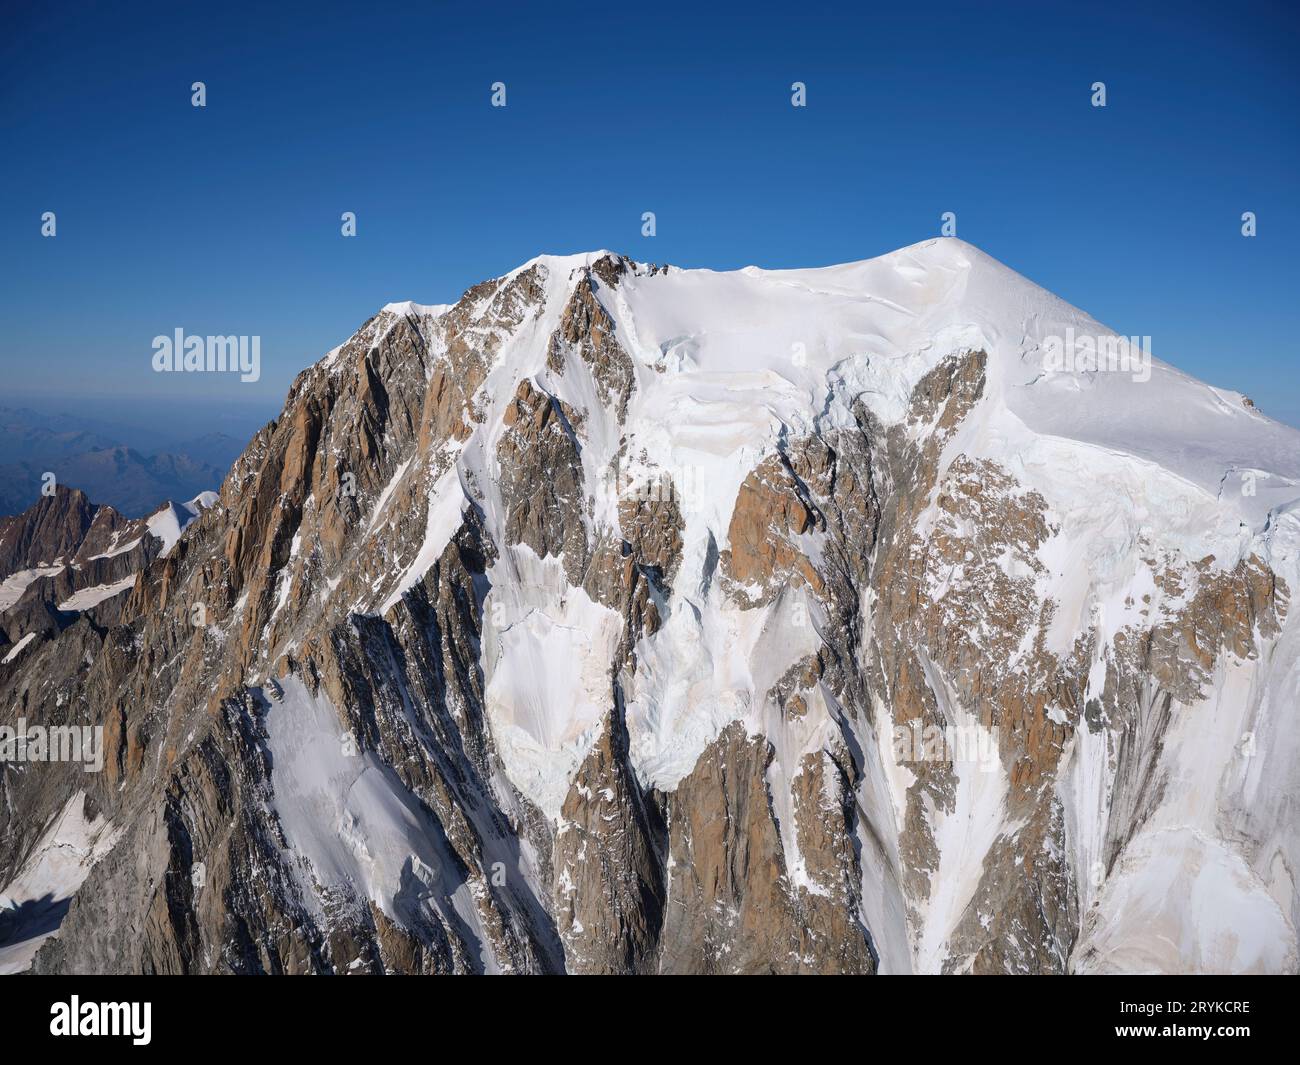 VUE AÉRIENNE. Côté italien du Mont blanc (altitude : 4805 à 4810 mètres selon le manteau neigeux). Courmayeur, Vallée d'Aoste, Italie. Banque D'Images